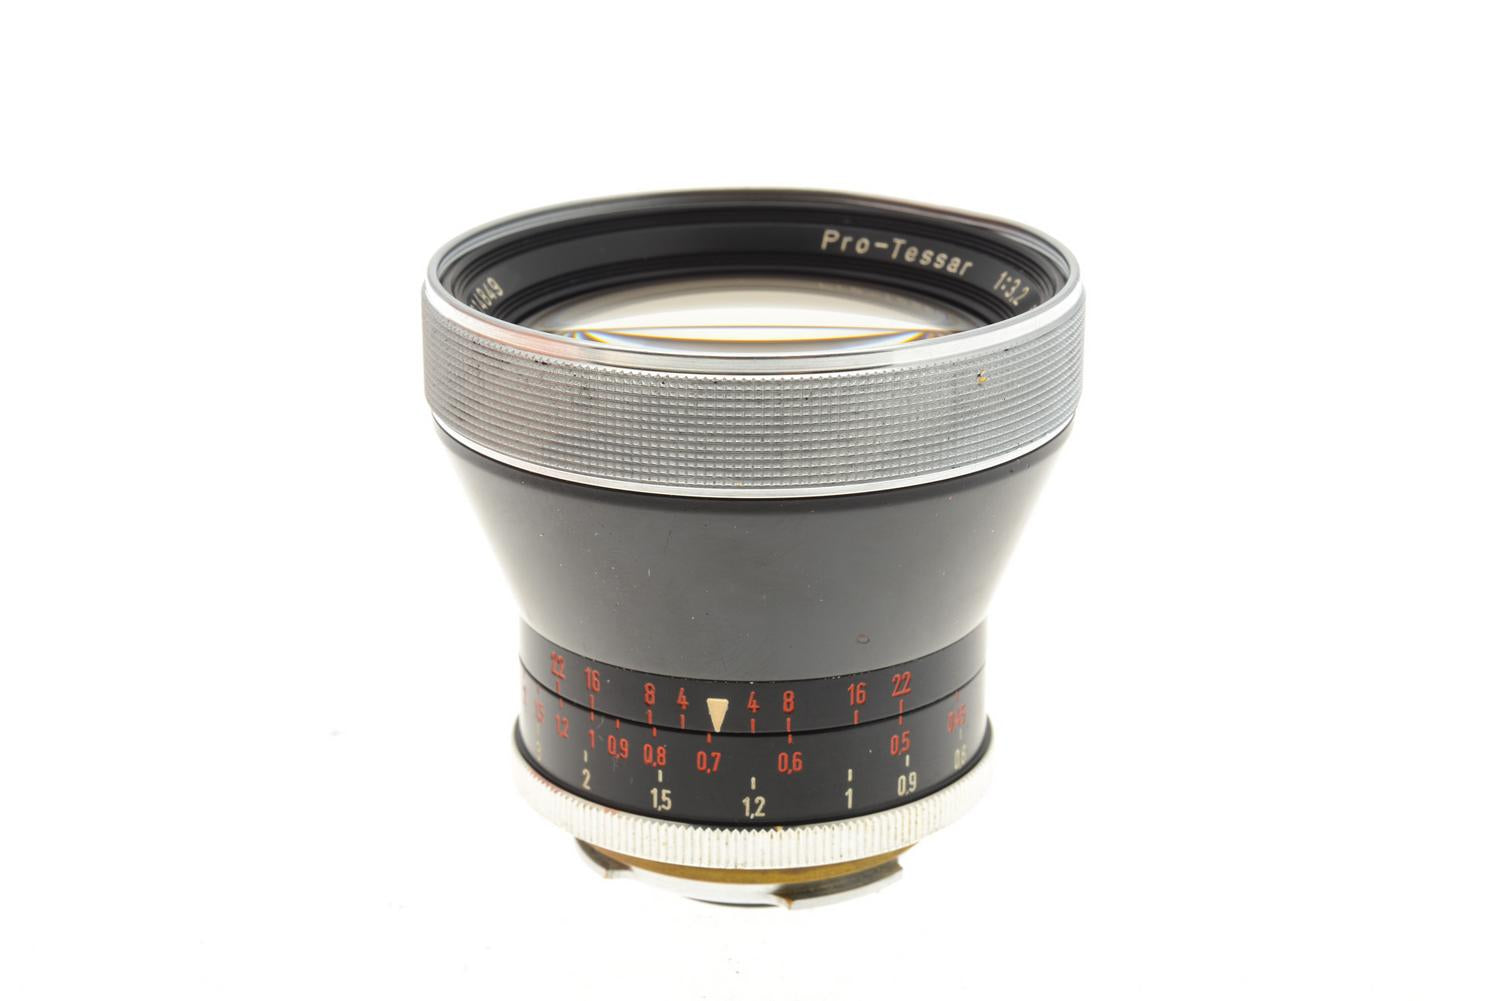 Carl Zeiss 35mm f3.2 Pro-Tessar - Lens